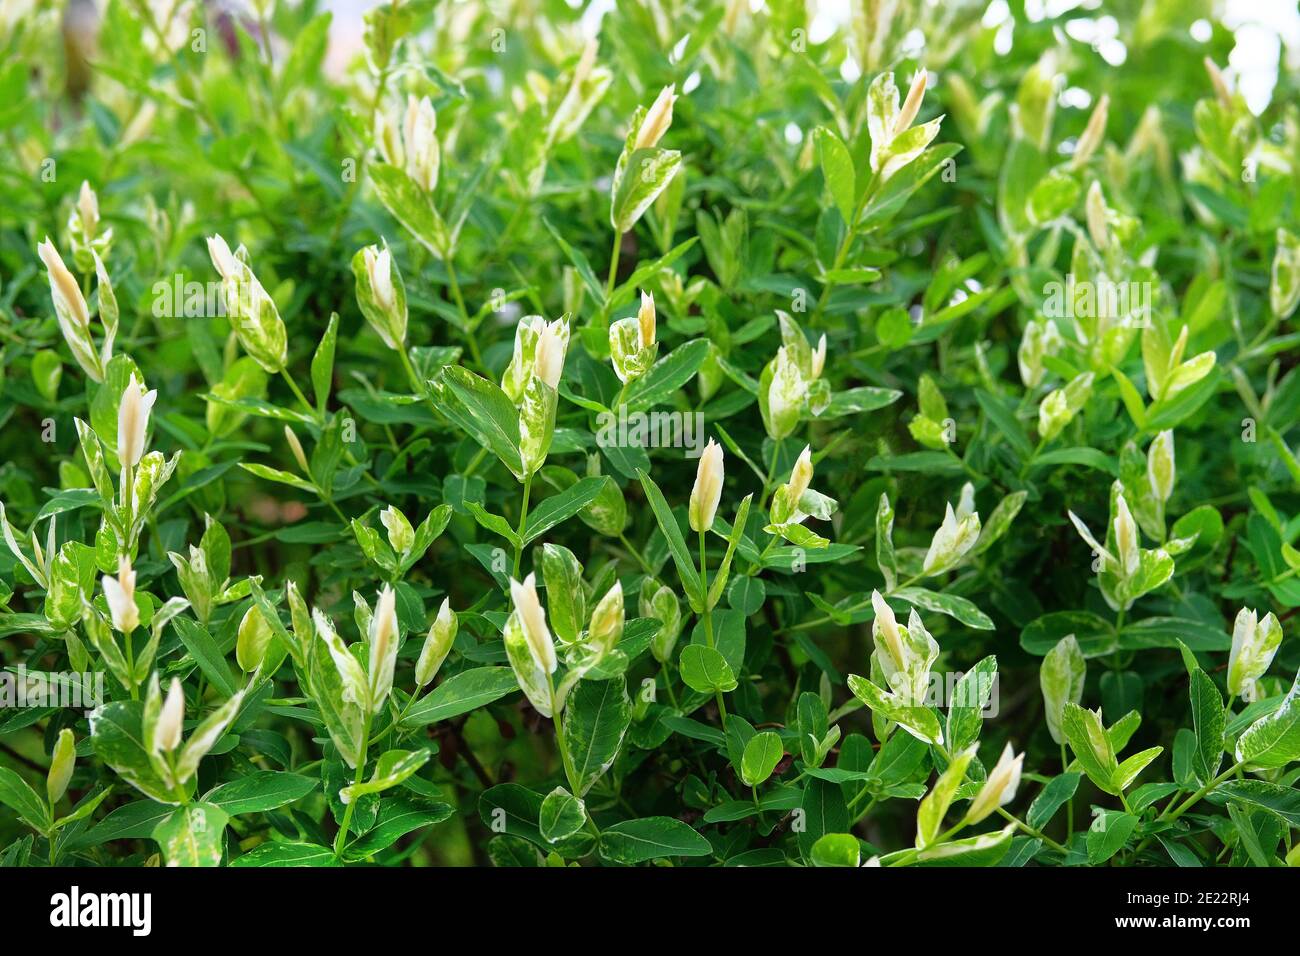 Salix integra, piante da giardino decorative, foglie bianche e verdi. Bush del salice sono interi fogli giapponesi, Hakuro Nishiki. Foto Stock